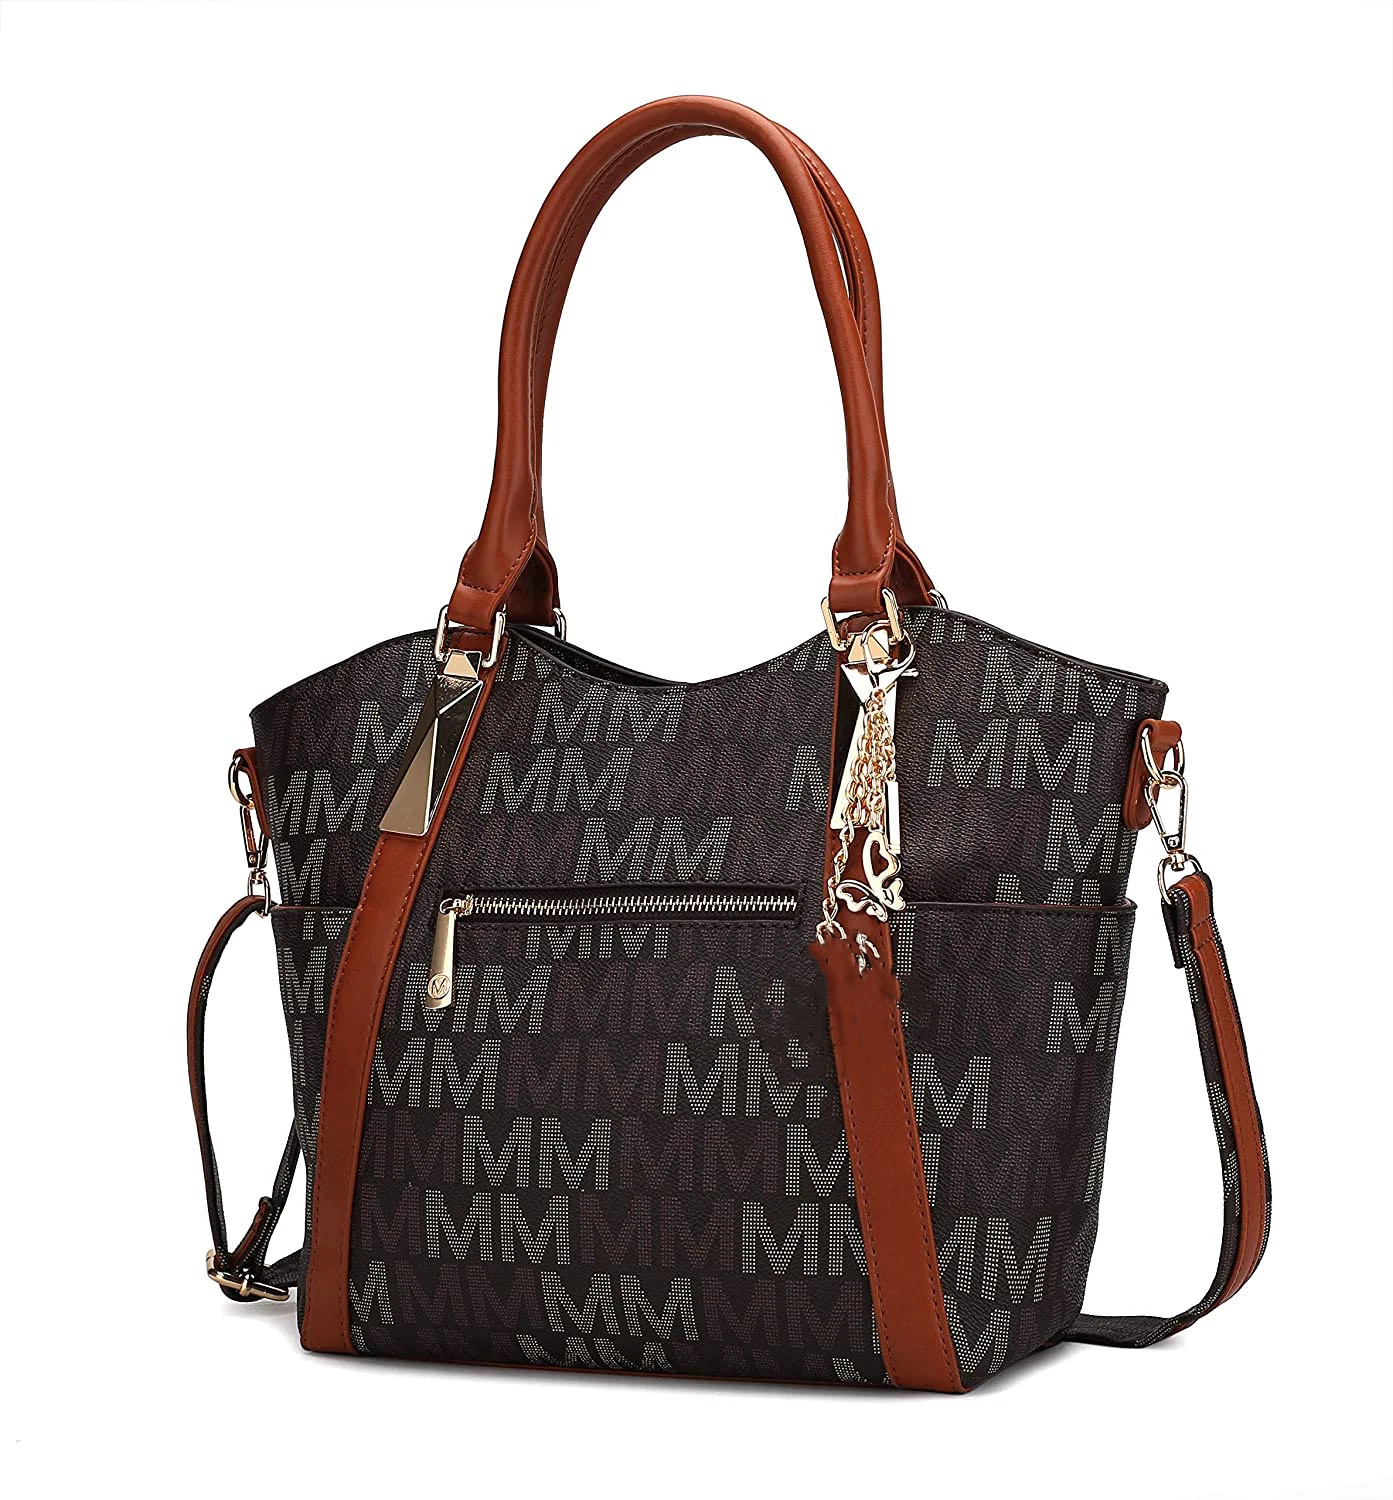 PU Leather Shoulder Bag Tote Satchel Handbag for Women